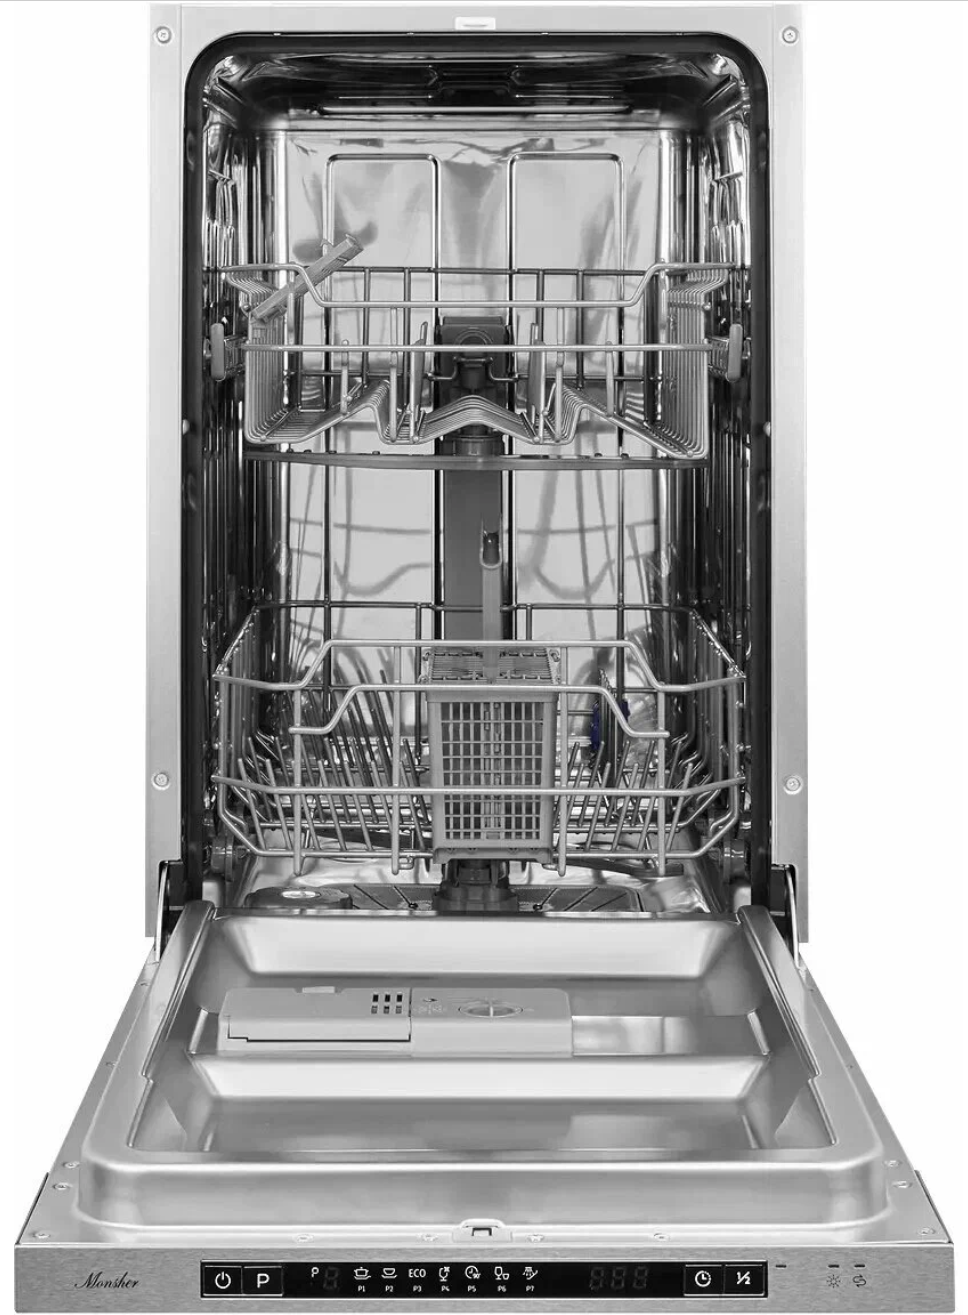 Посудомоечная машина встраиваемая Monsher MD 4501 (модификация 2023 года)